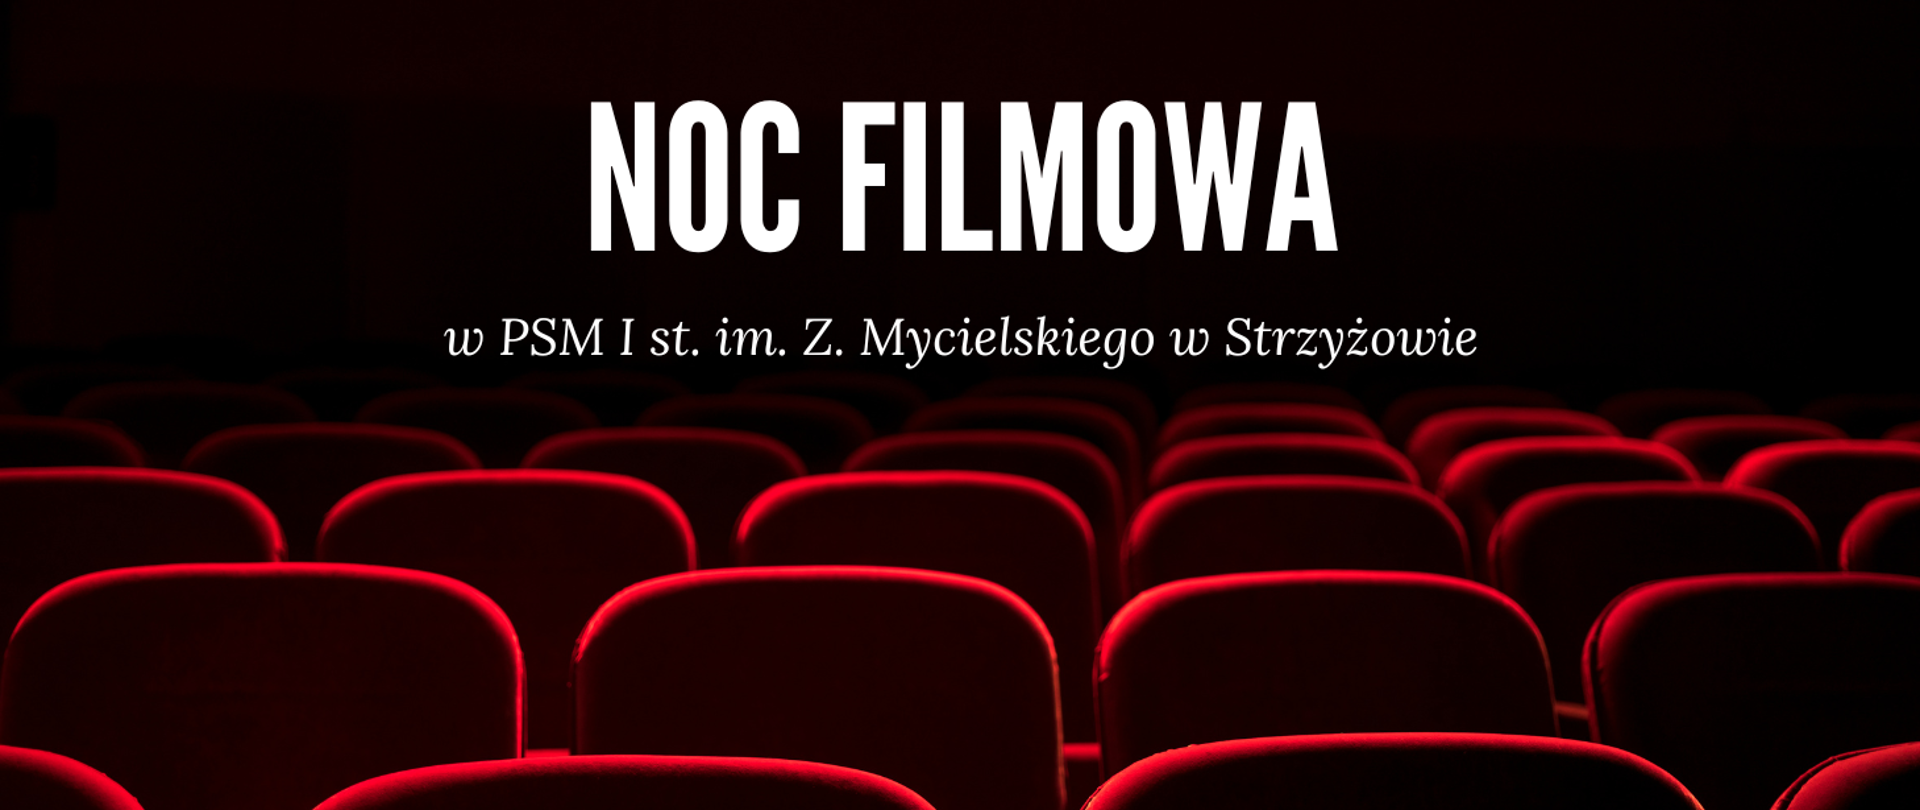 Grafika przedstawia 5-6 rzędów czerwonych foteli kinowych na czarnym tle. U góry napis "NOC FILMOWA w PSM I st. im. Z. Mycielskiego w Strzyżowie"